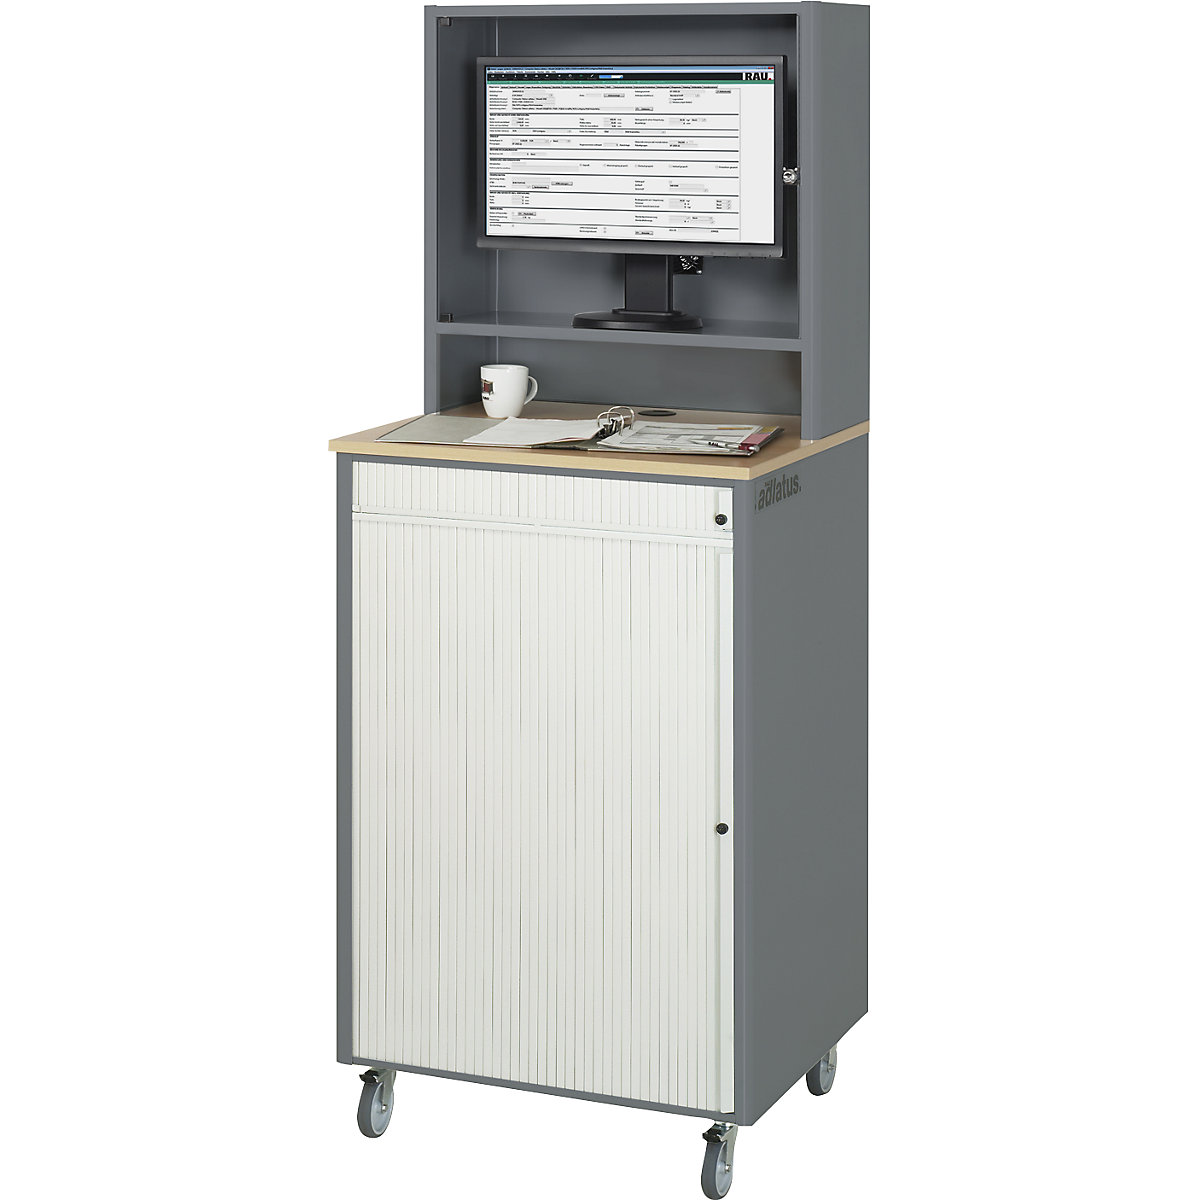 RAU Computer-Arbeitsplatz, HxBxT 1810 x 720 x 660 mm, mit Monitorgehäuse, fahrbar, anthrazit-metallic / enzianblau